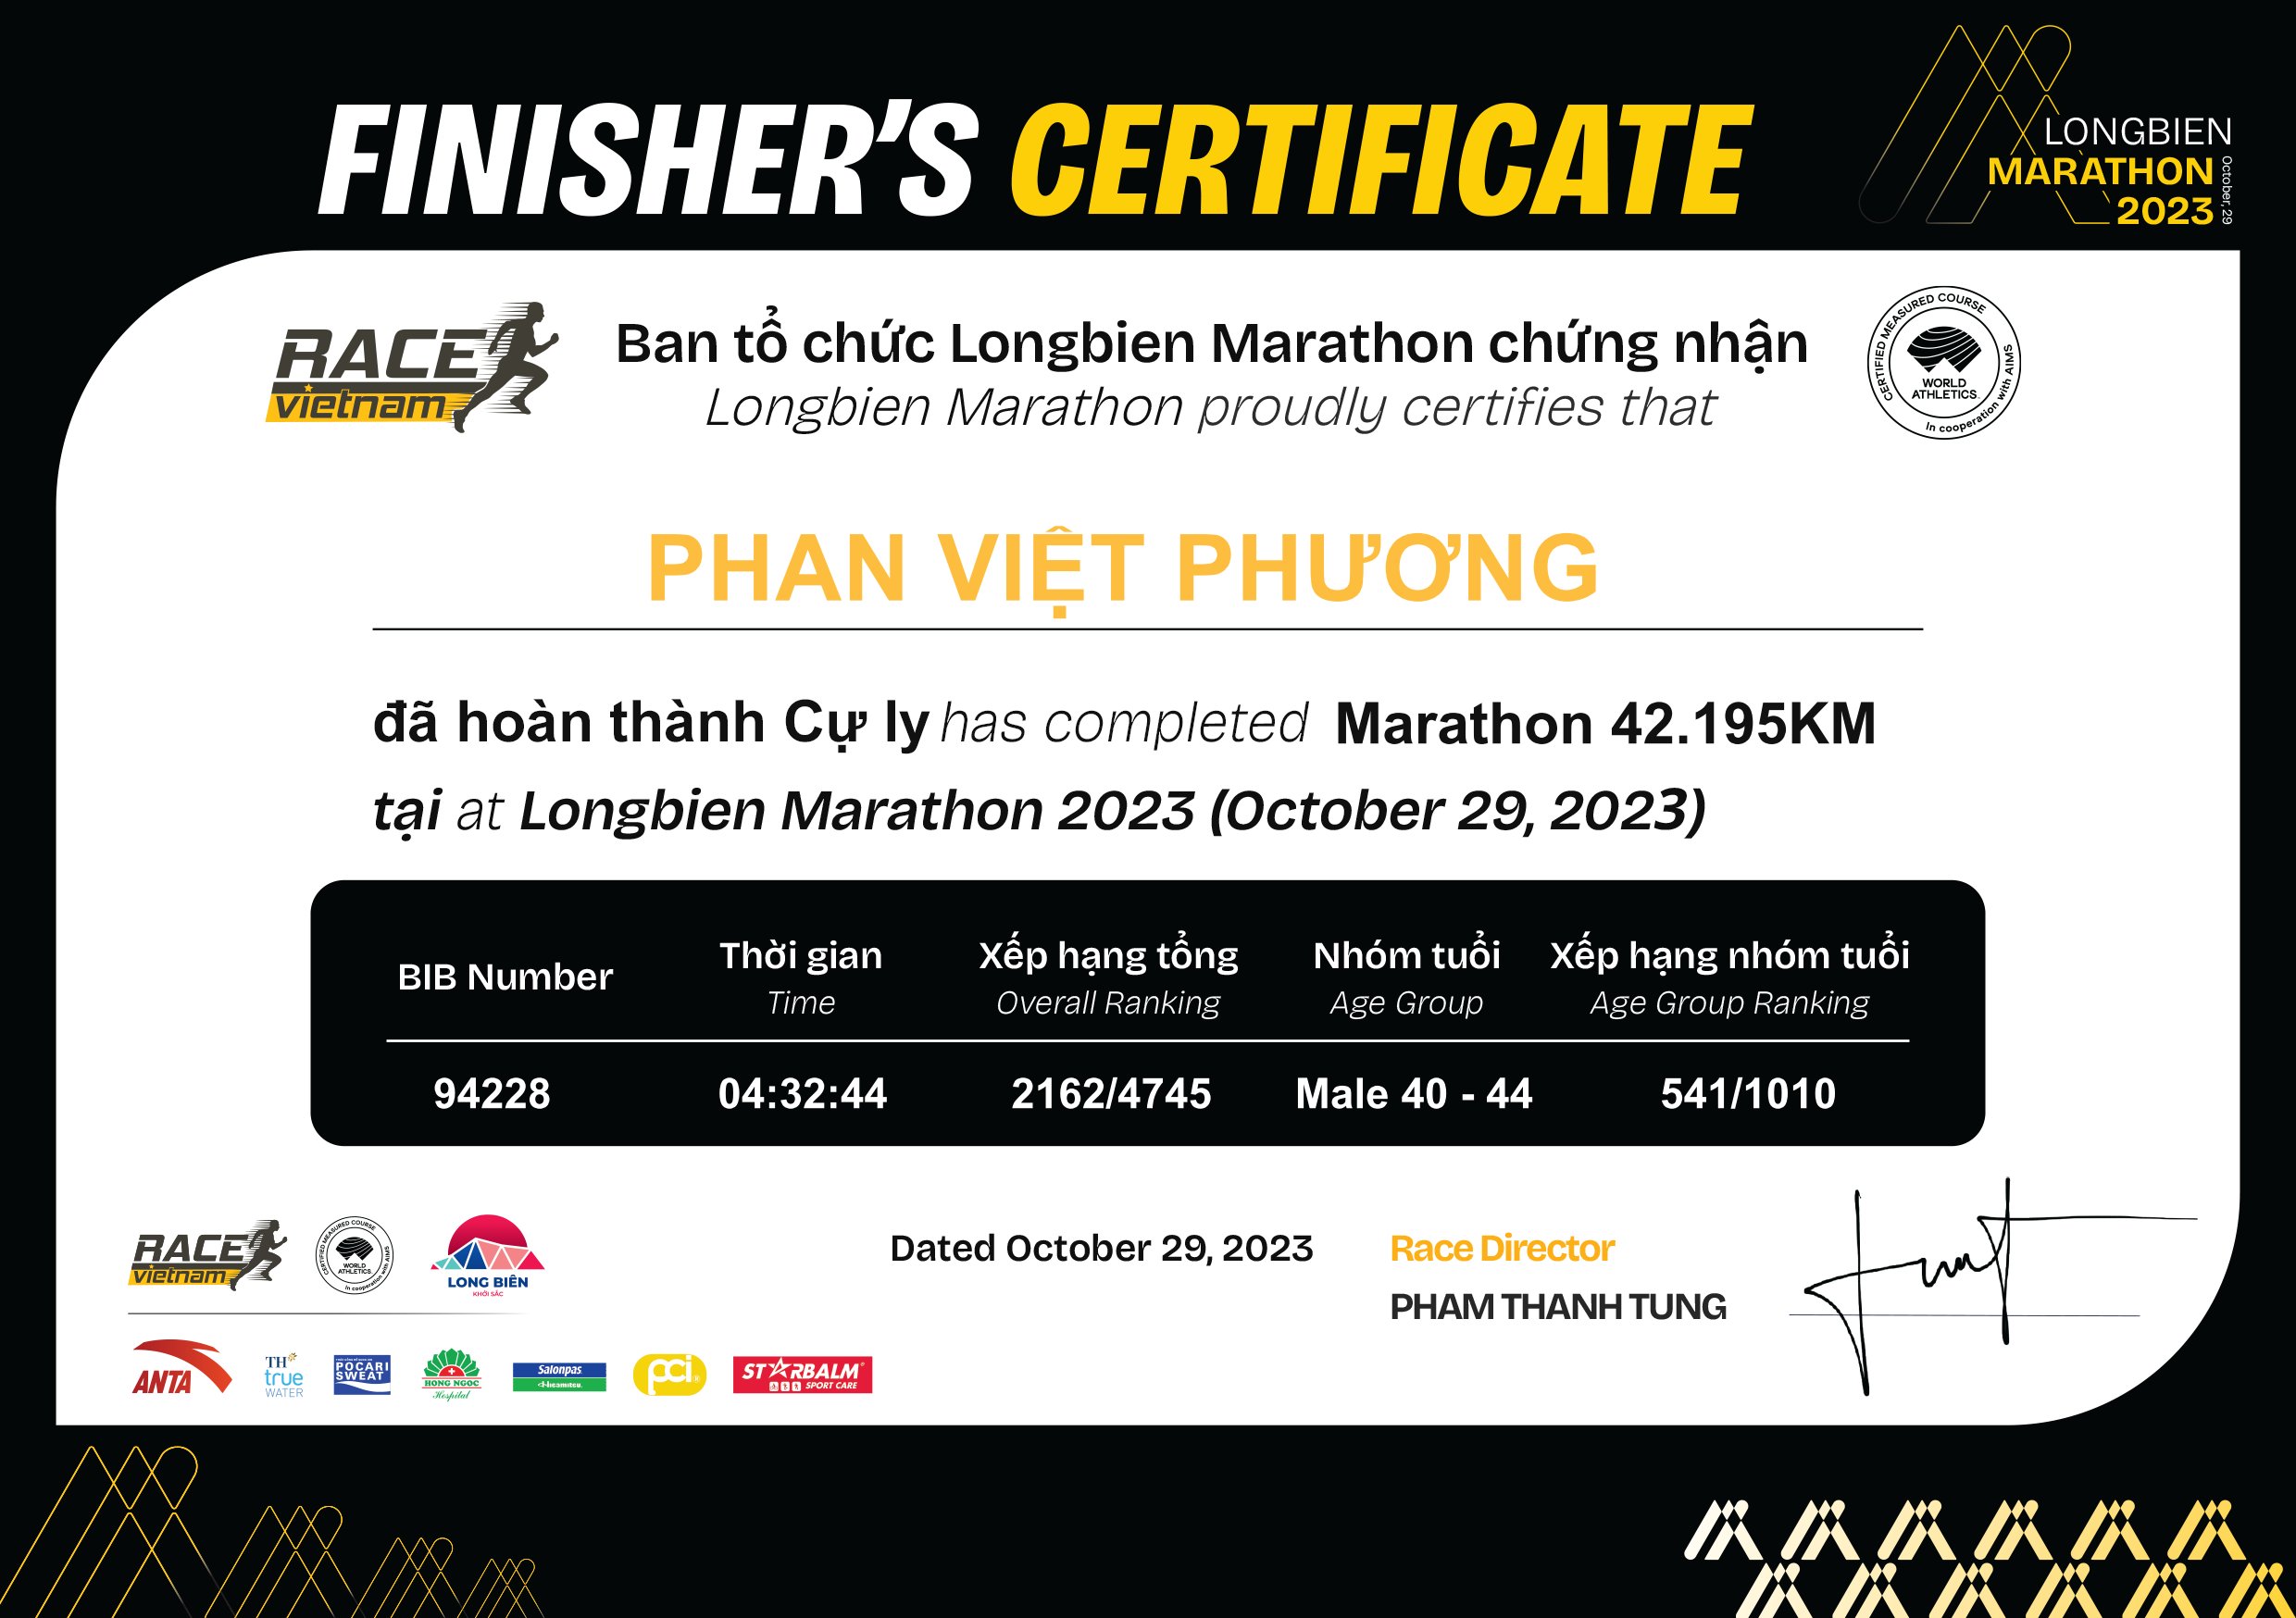 94228 - Phan Việt Phương